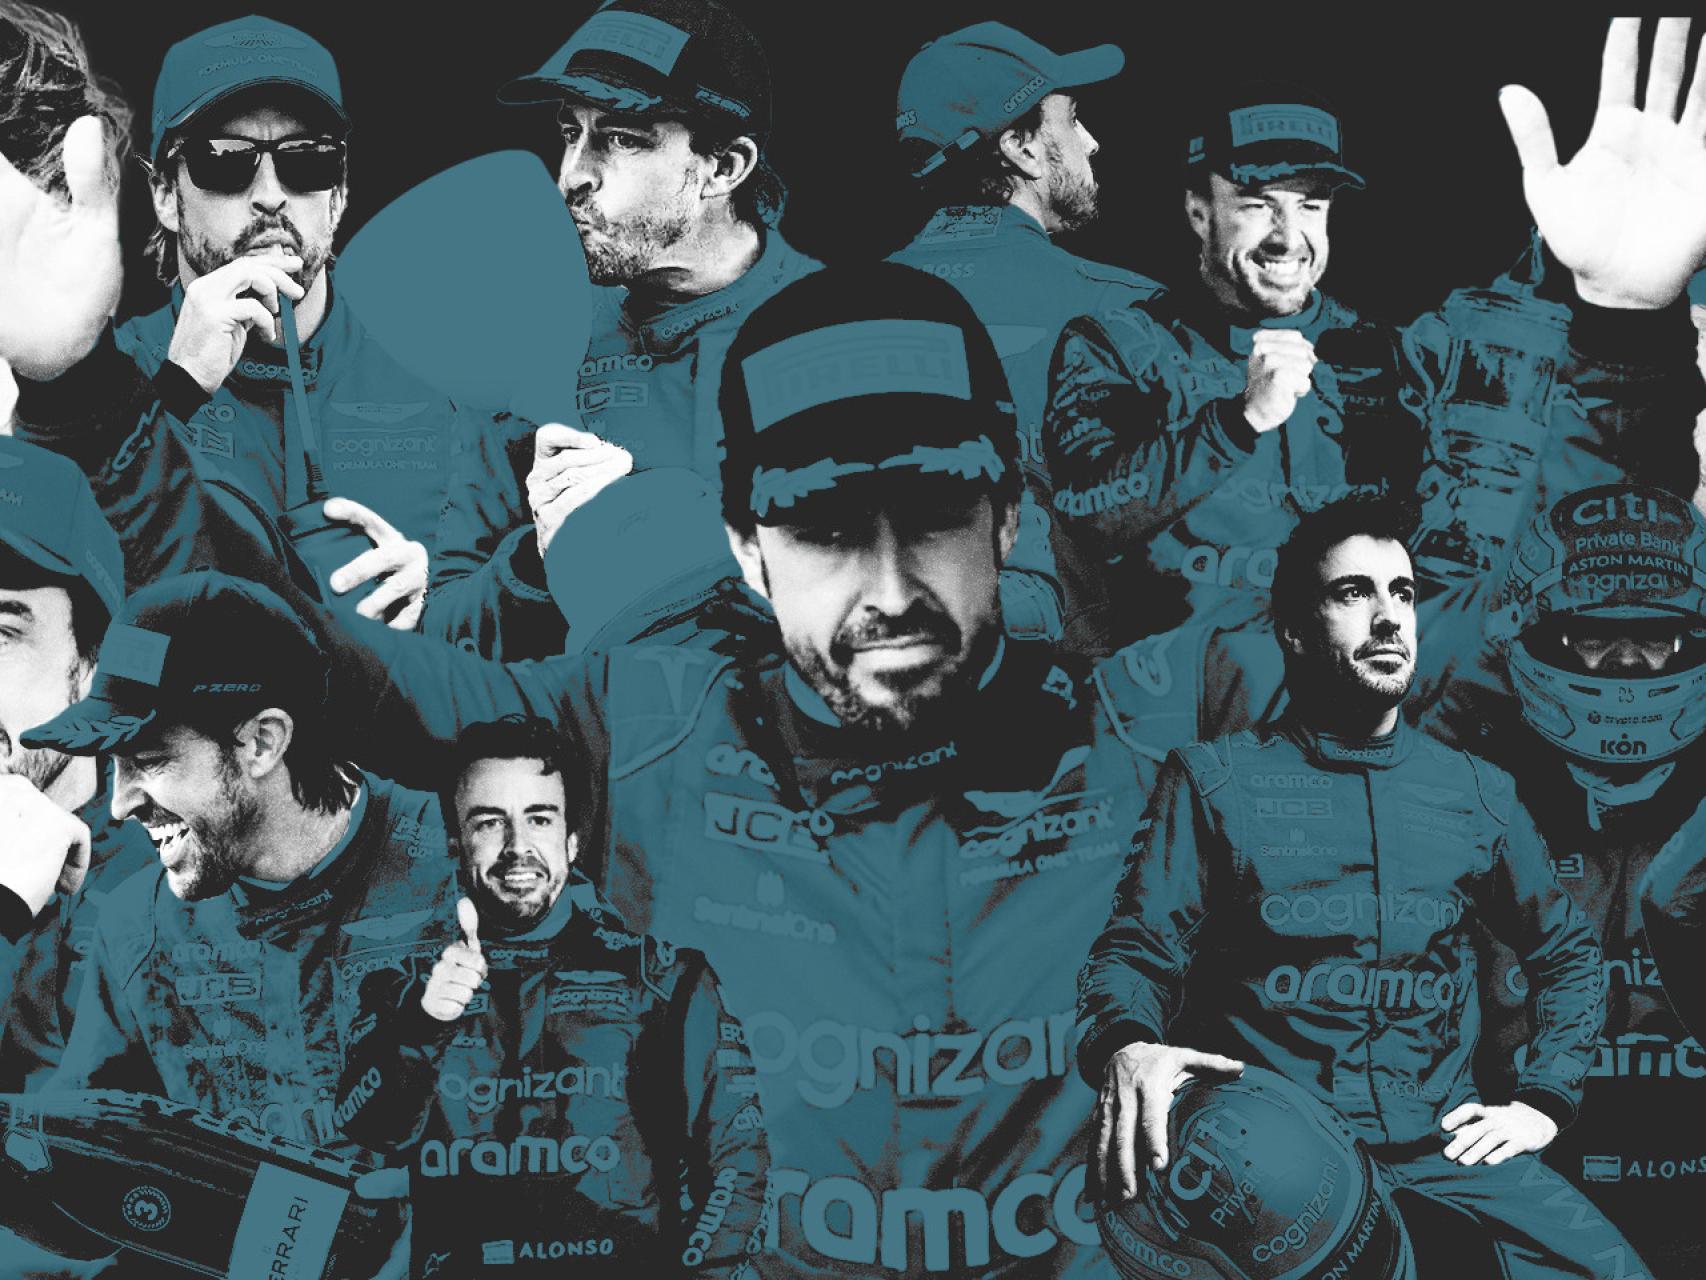 Fernando Alonso hace soñar a Aston Martin: se sube al podio en la primera  carrera del año